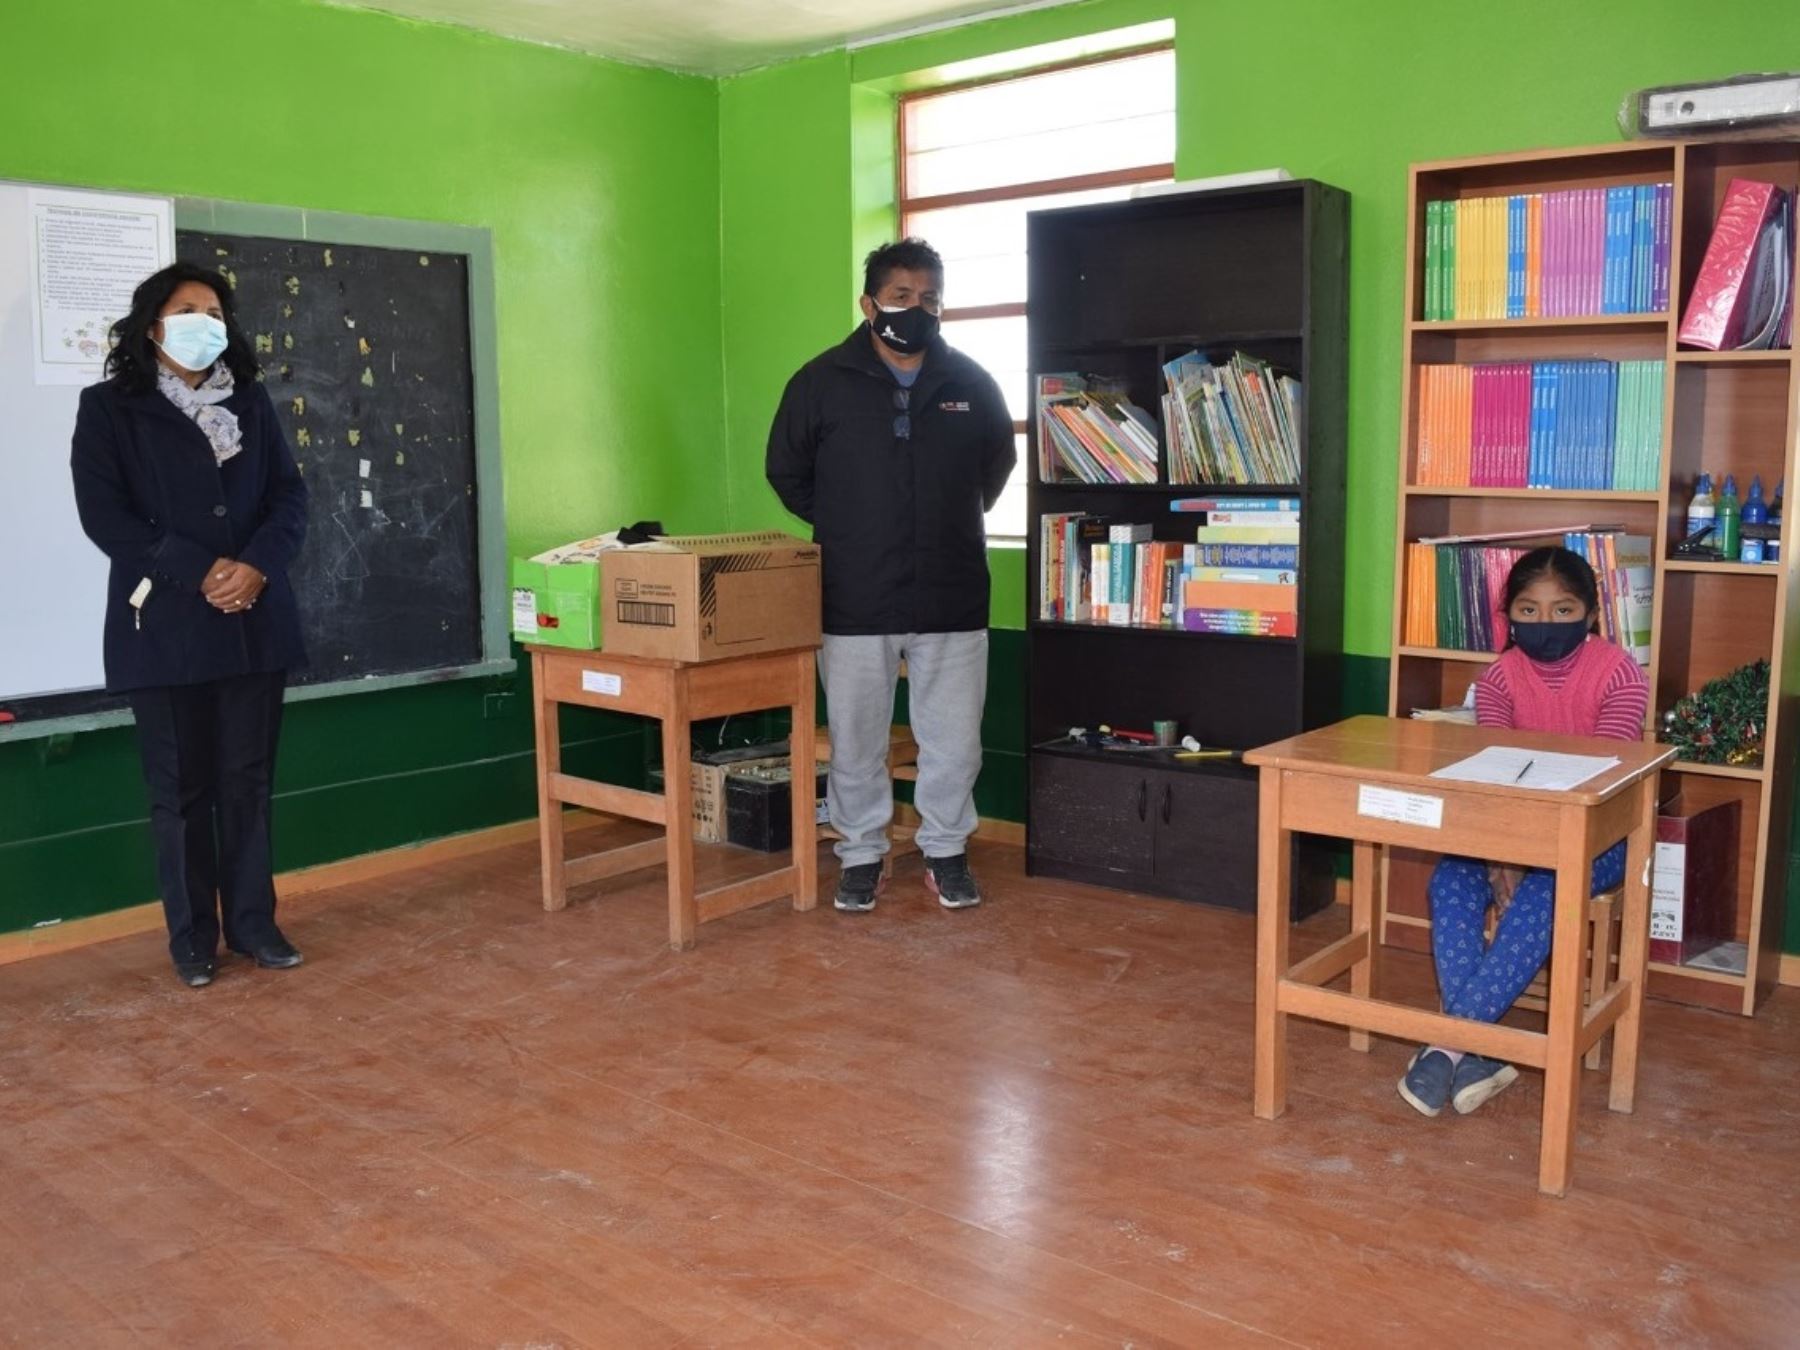 La Dirección Regional de Educación de Tacna dispuso que la suspensión de clases presenciales rige en los colegios públicos y privados de la provincia de Tacna. ANDINA/Difusión